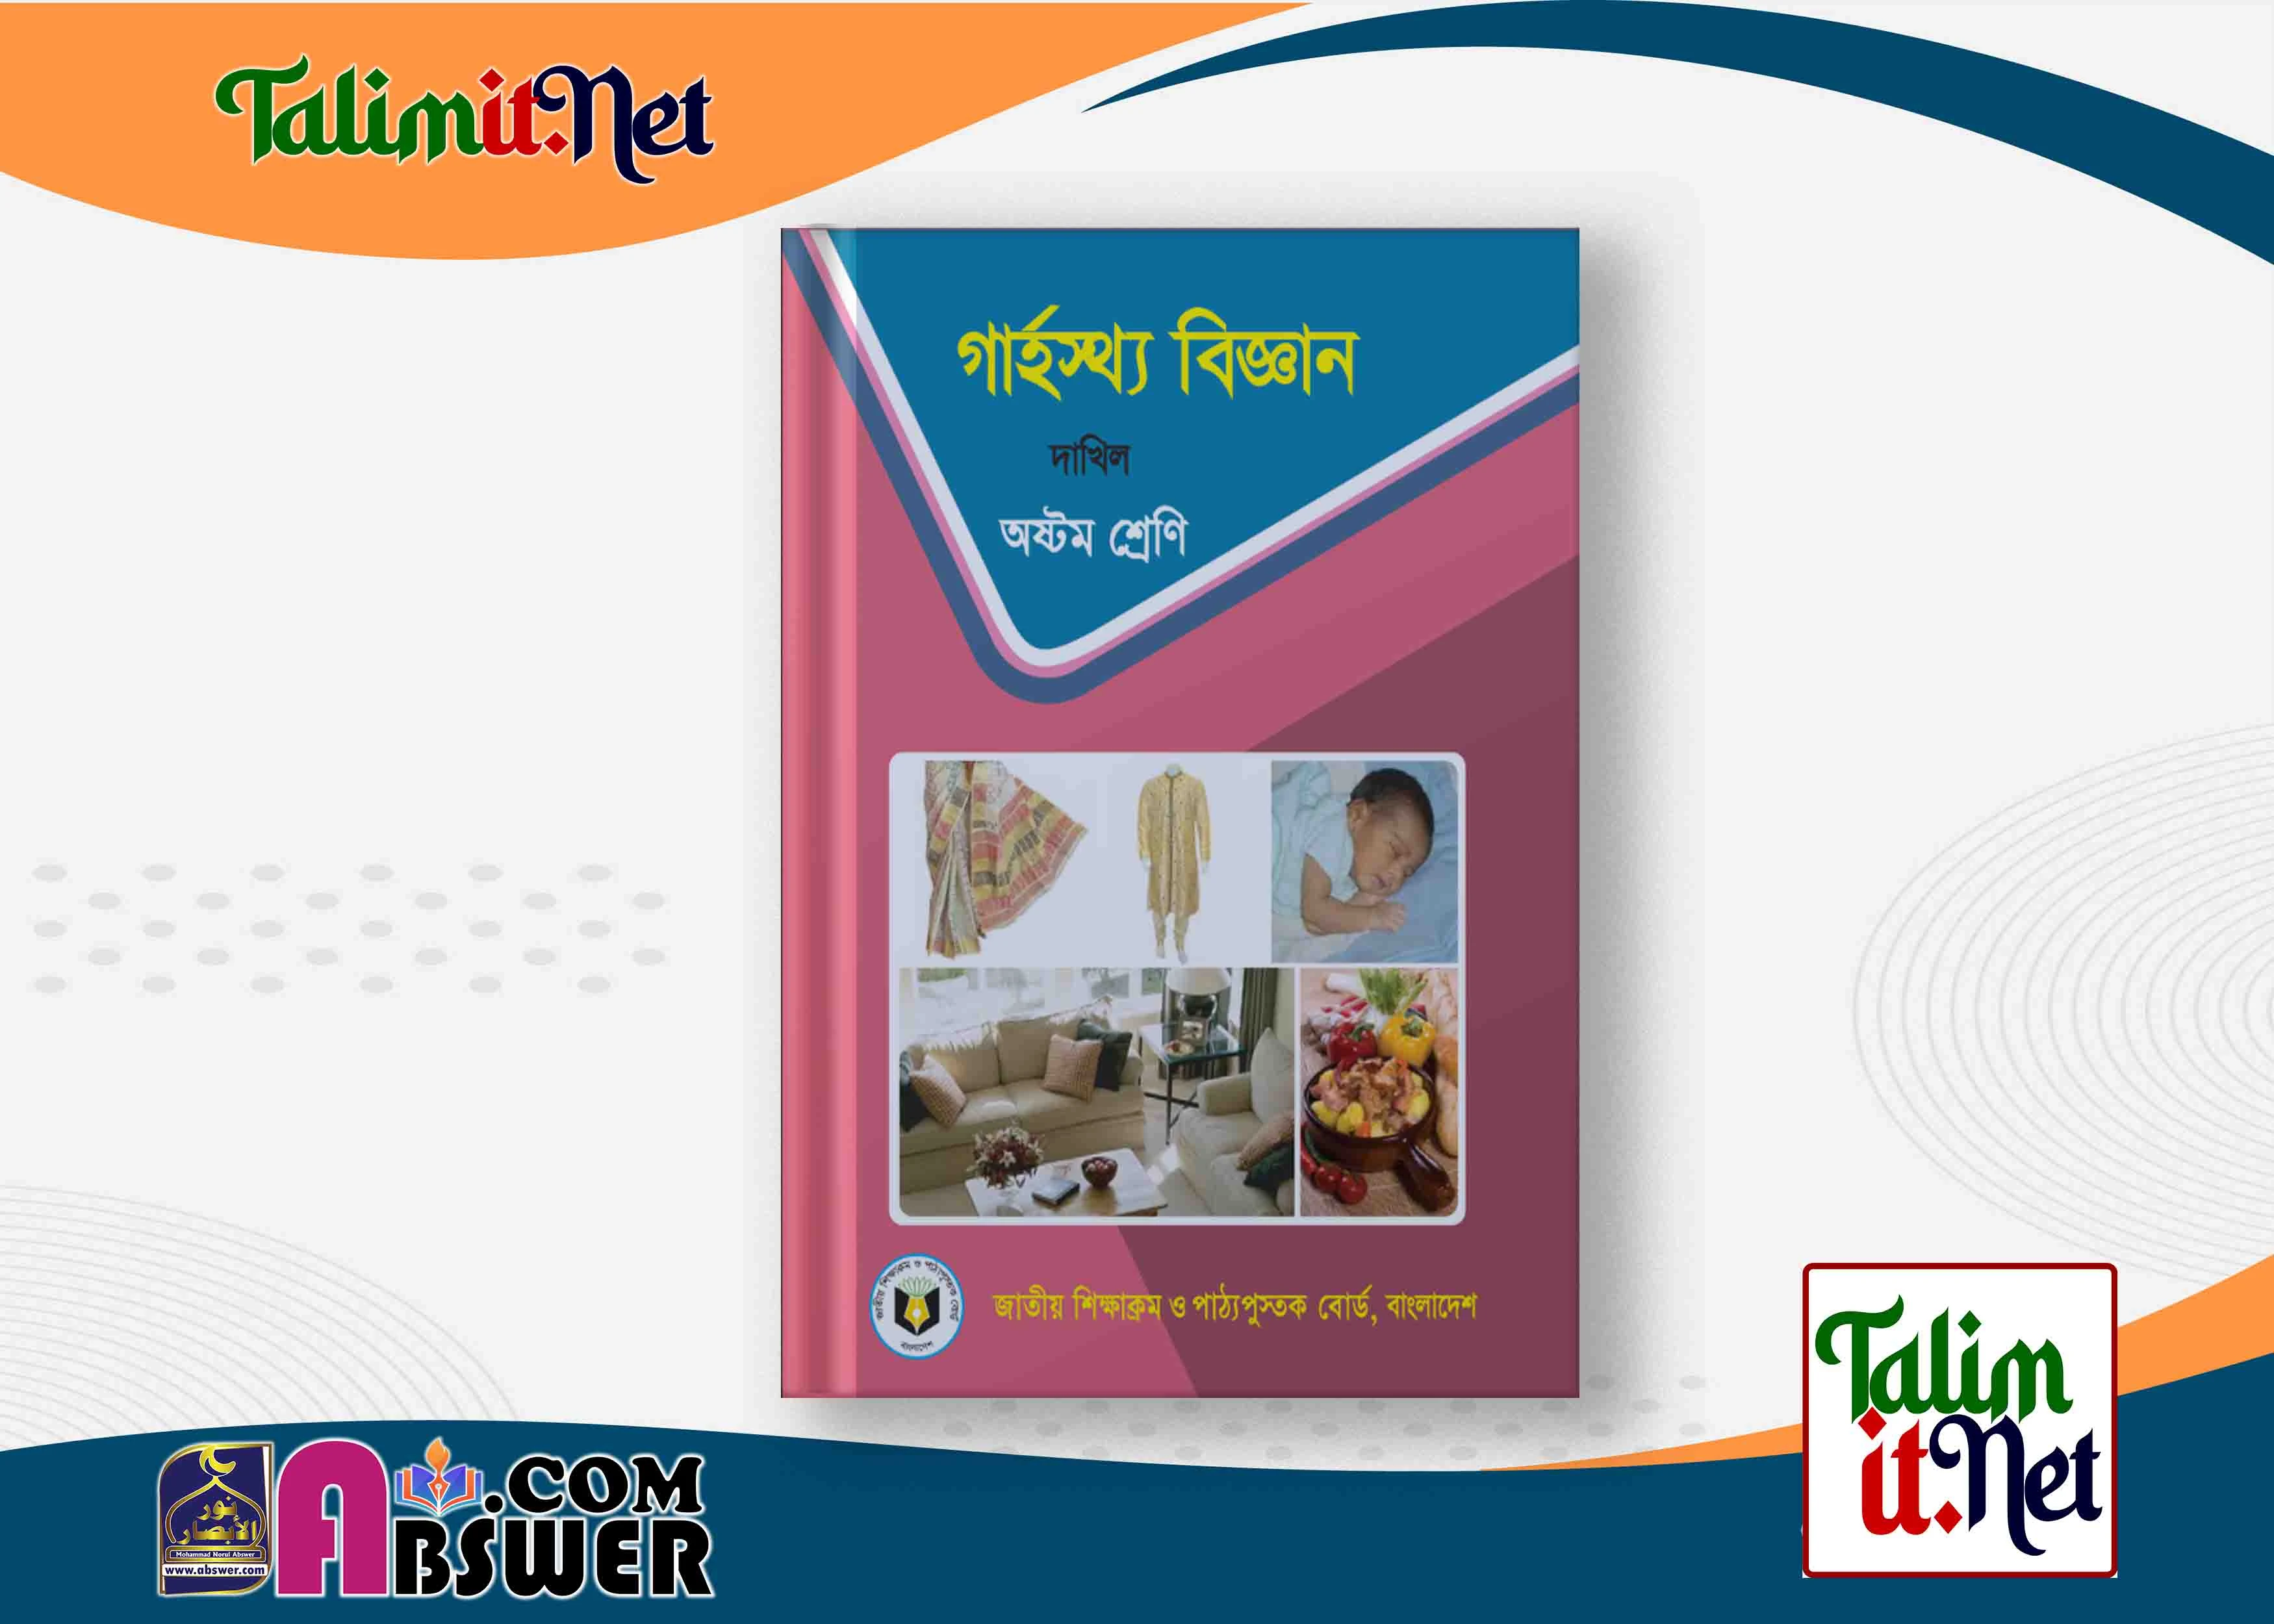 গার্হস্থ্য বিজ্ঞান - দাখিল ৮ম শ্রেণির মাদ্রাসার পাঠ্যবই পিডিএফ ২০২৩ | Home science - Dakhil Class 8 Book 2023 NCTB Madrasha Pdf